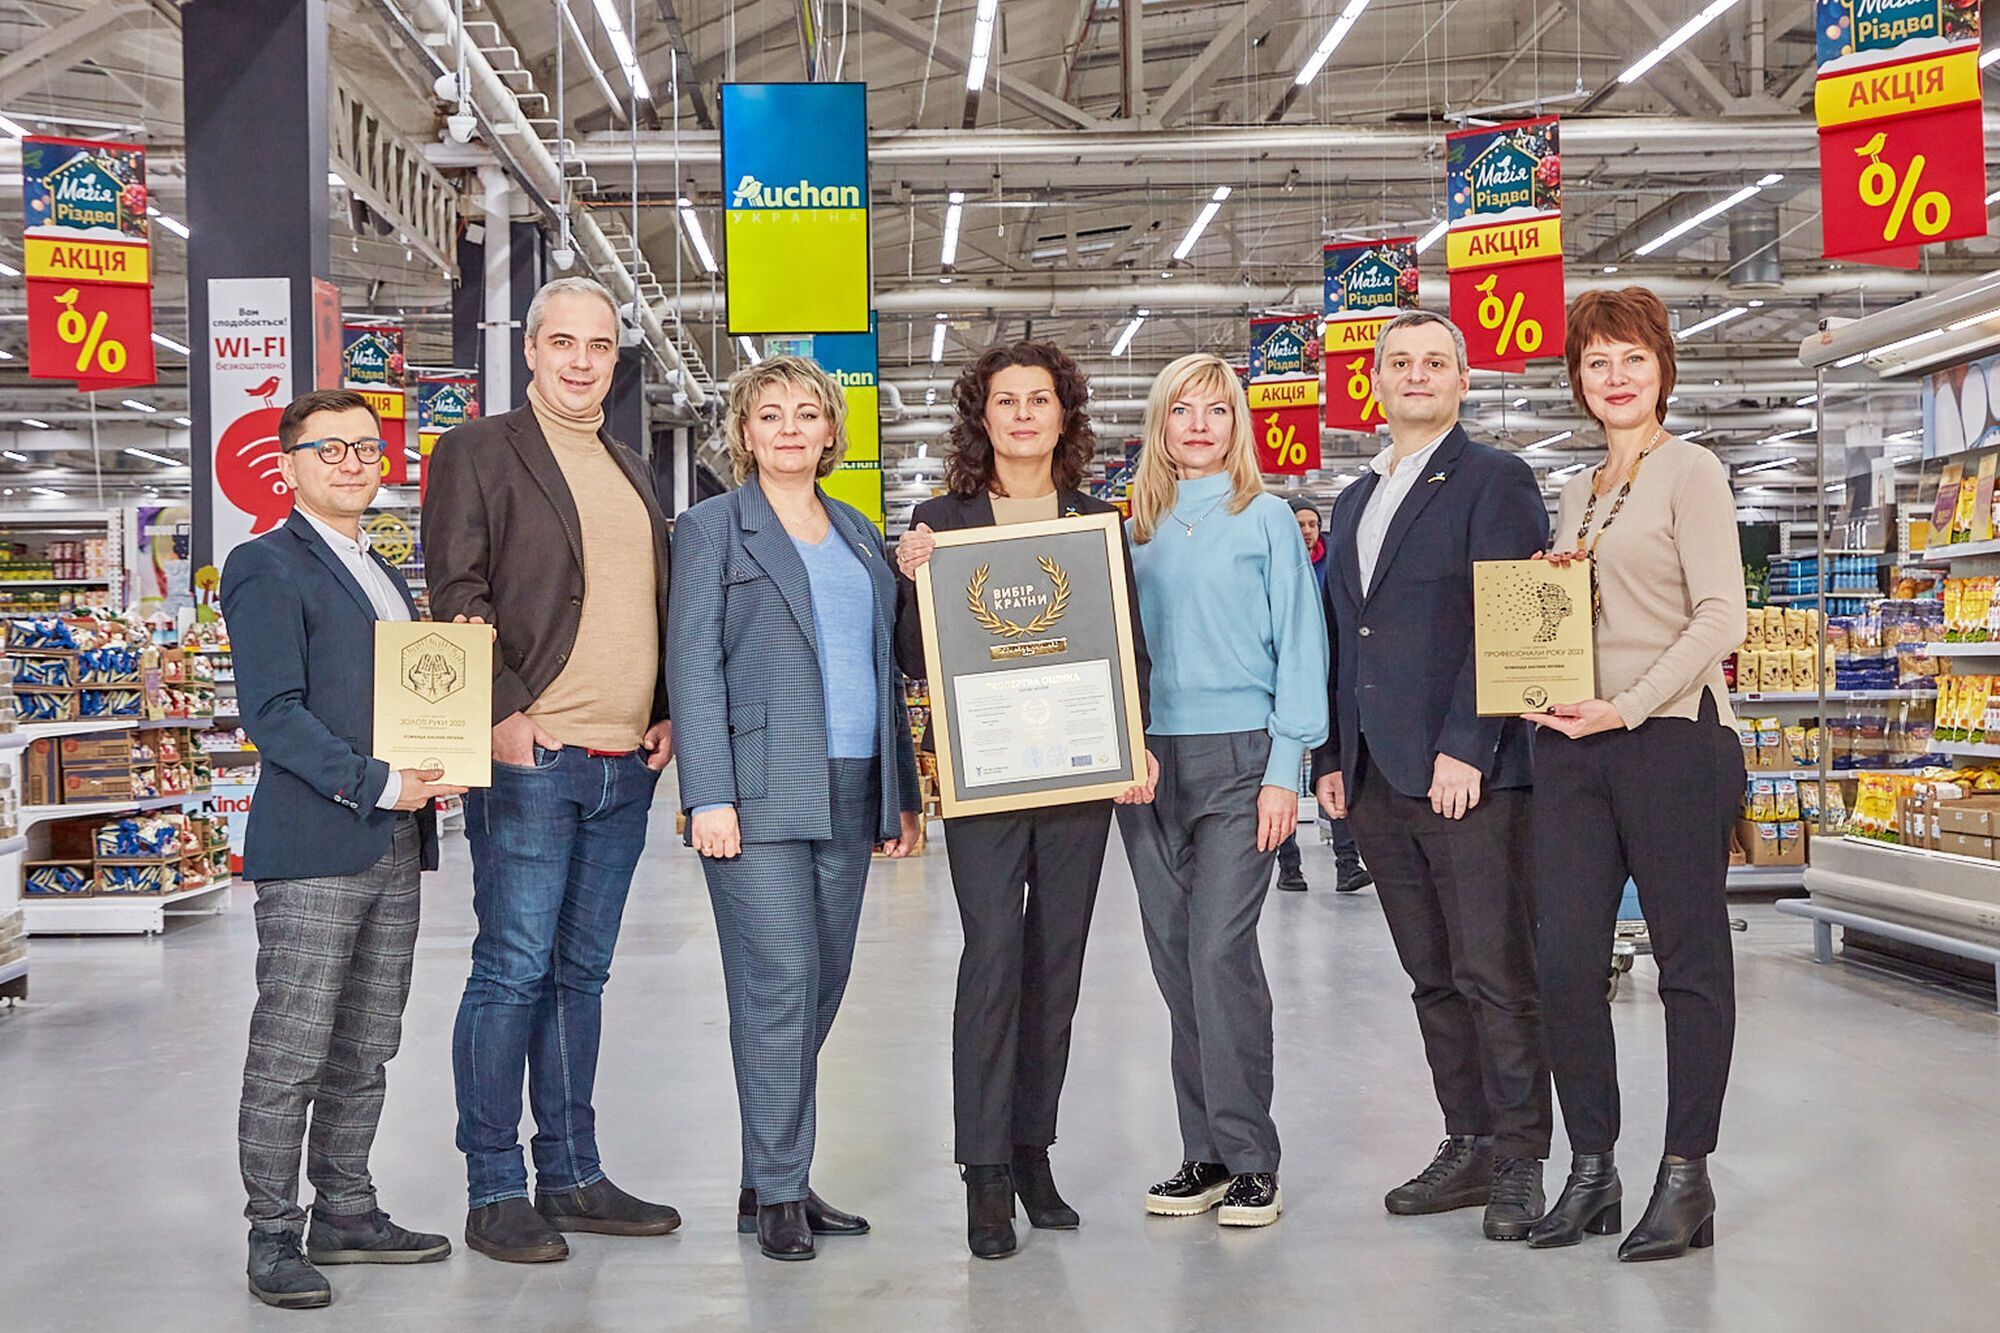 Auchan Україна здобула перемогу за "Економний кошик року": які товари входять